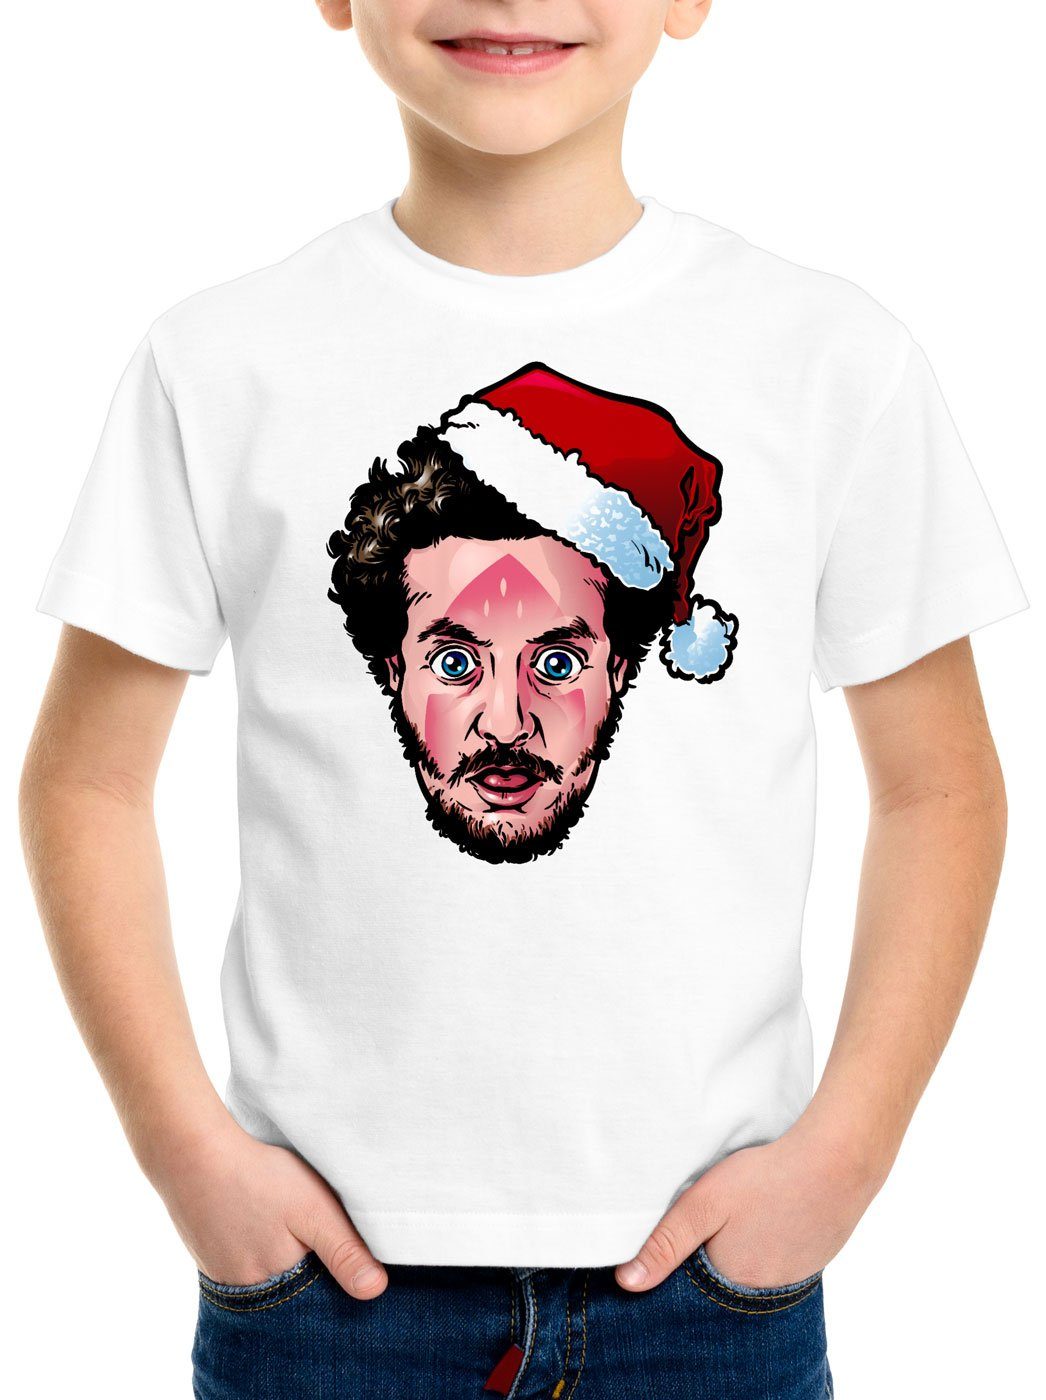 Print-Shirt allein Marv style3 T-Shirt bügeleisen kevin Kinder weiß weihnachten Bandit